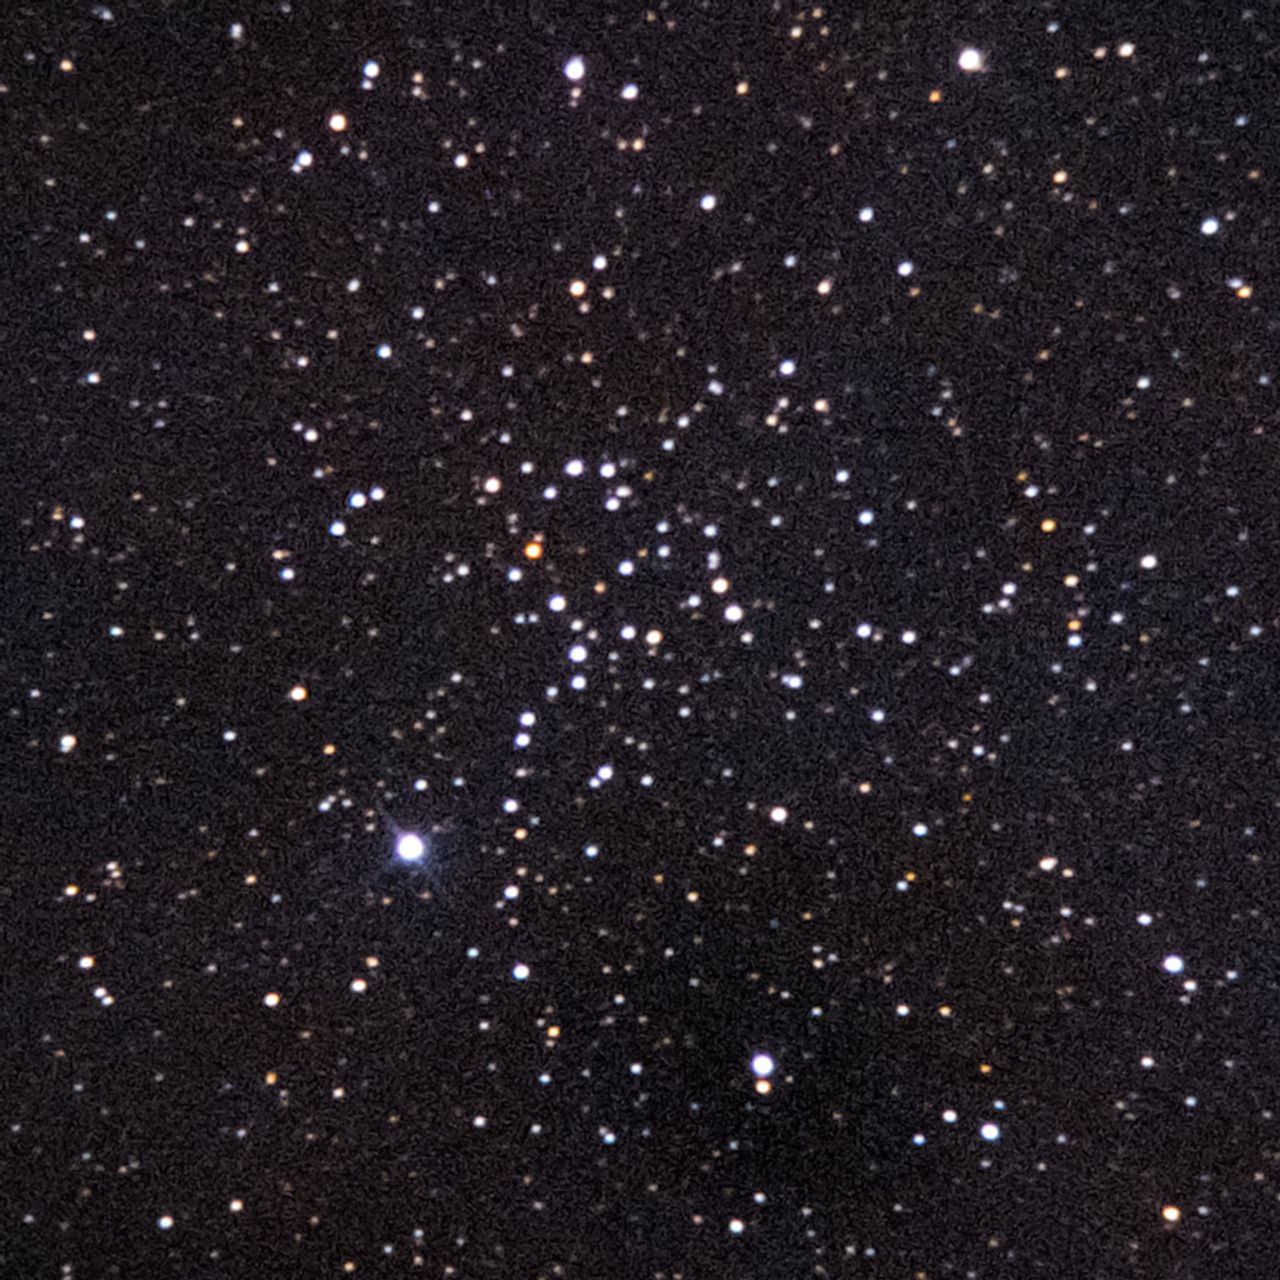 NGC1664